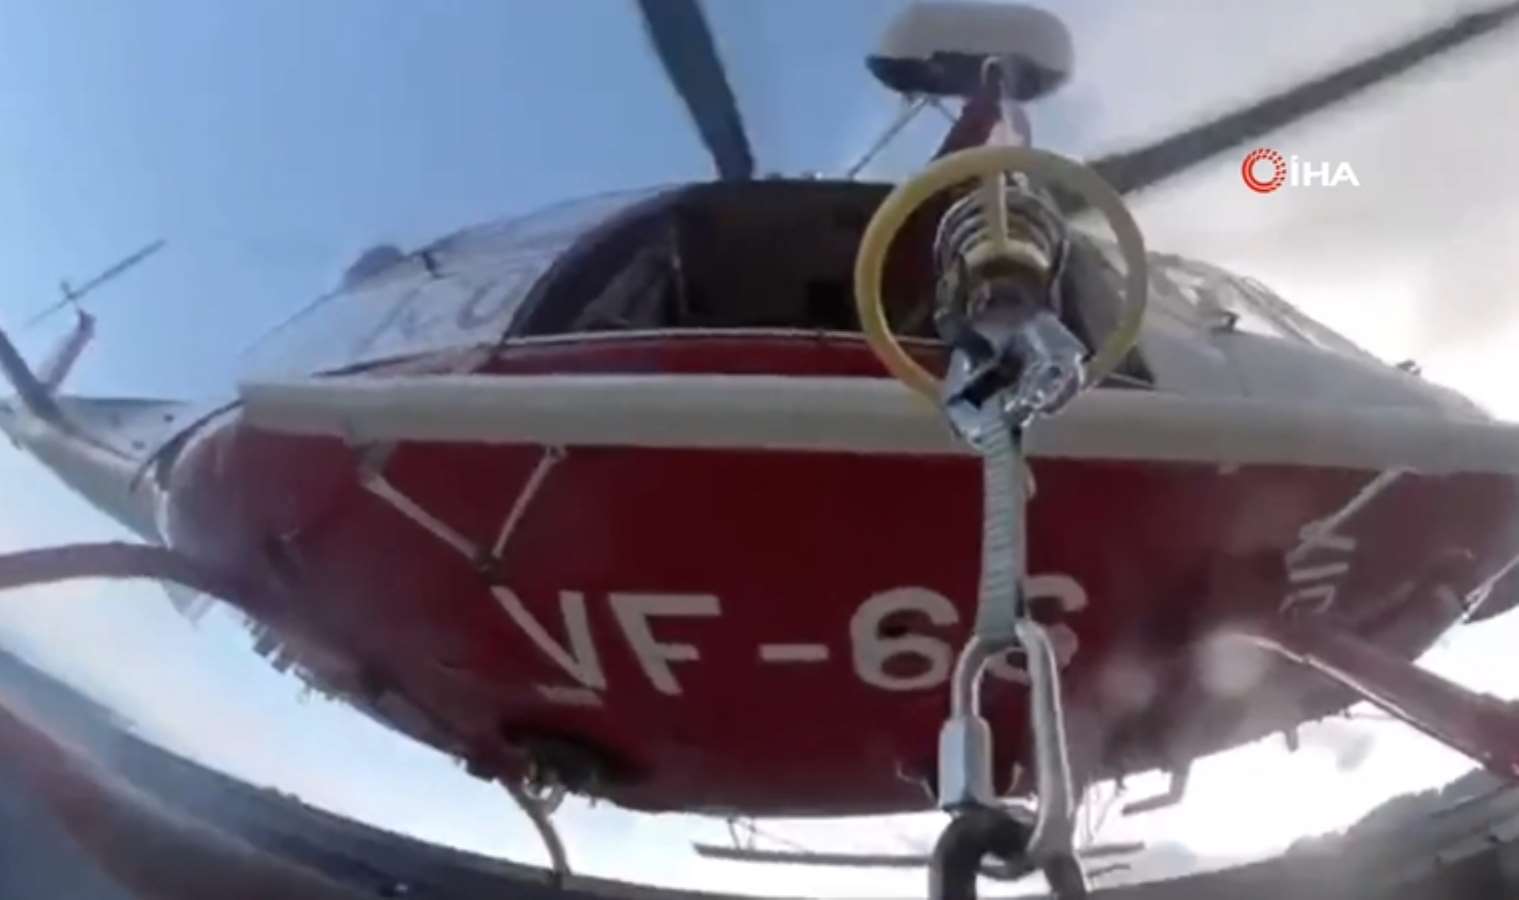 Mahsur kalan 3 kayakçı helikopterle kurtarıldı